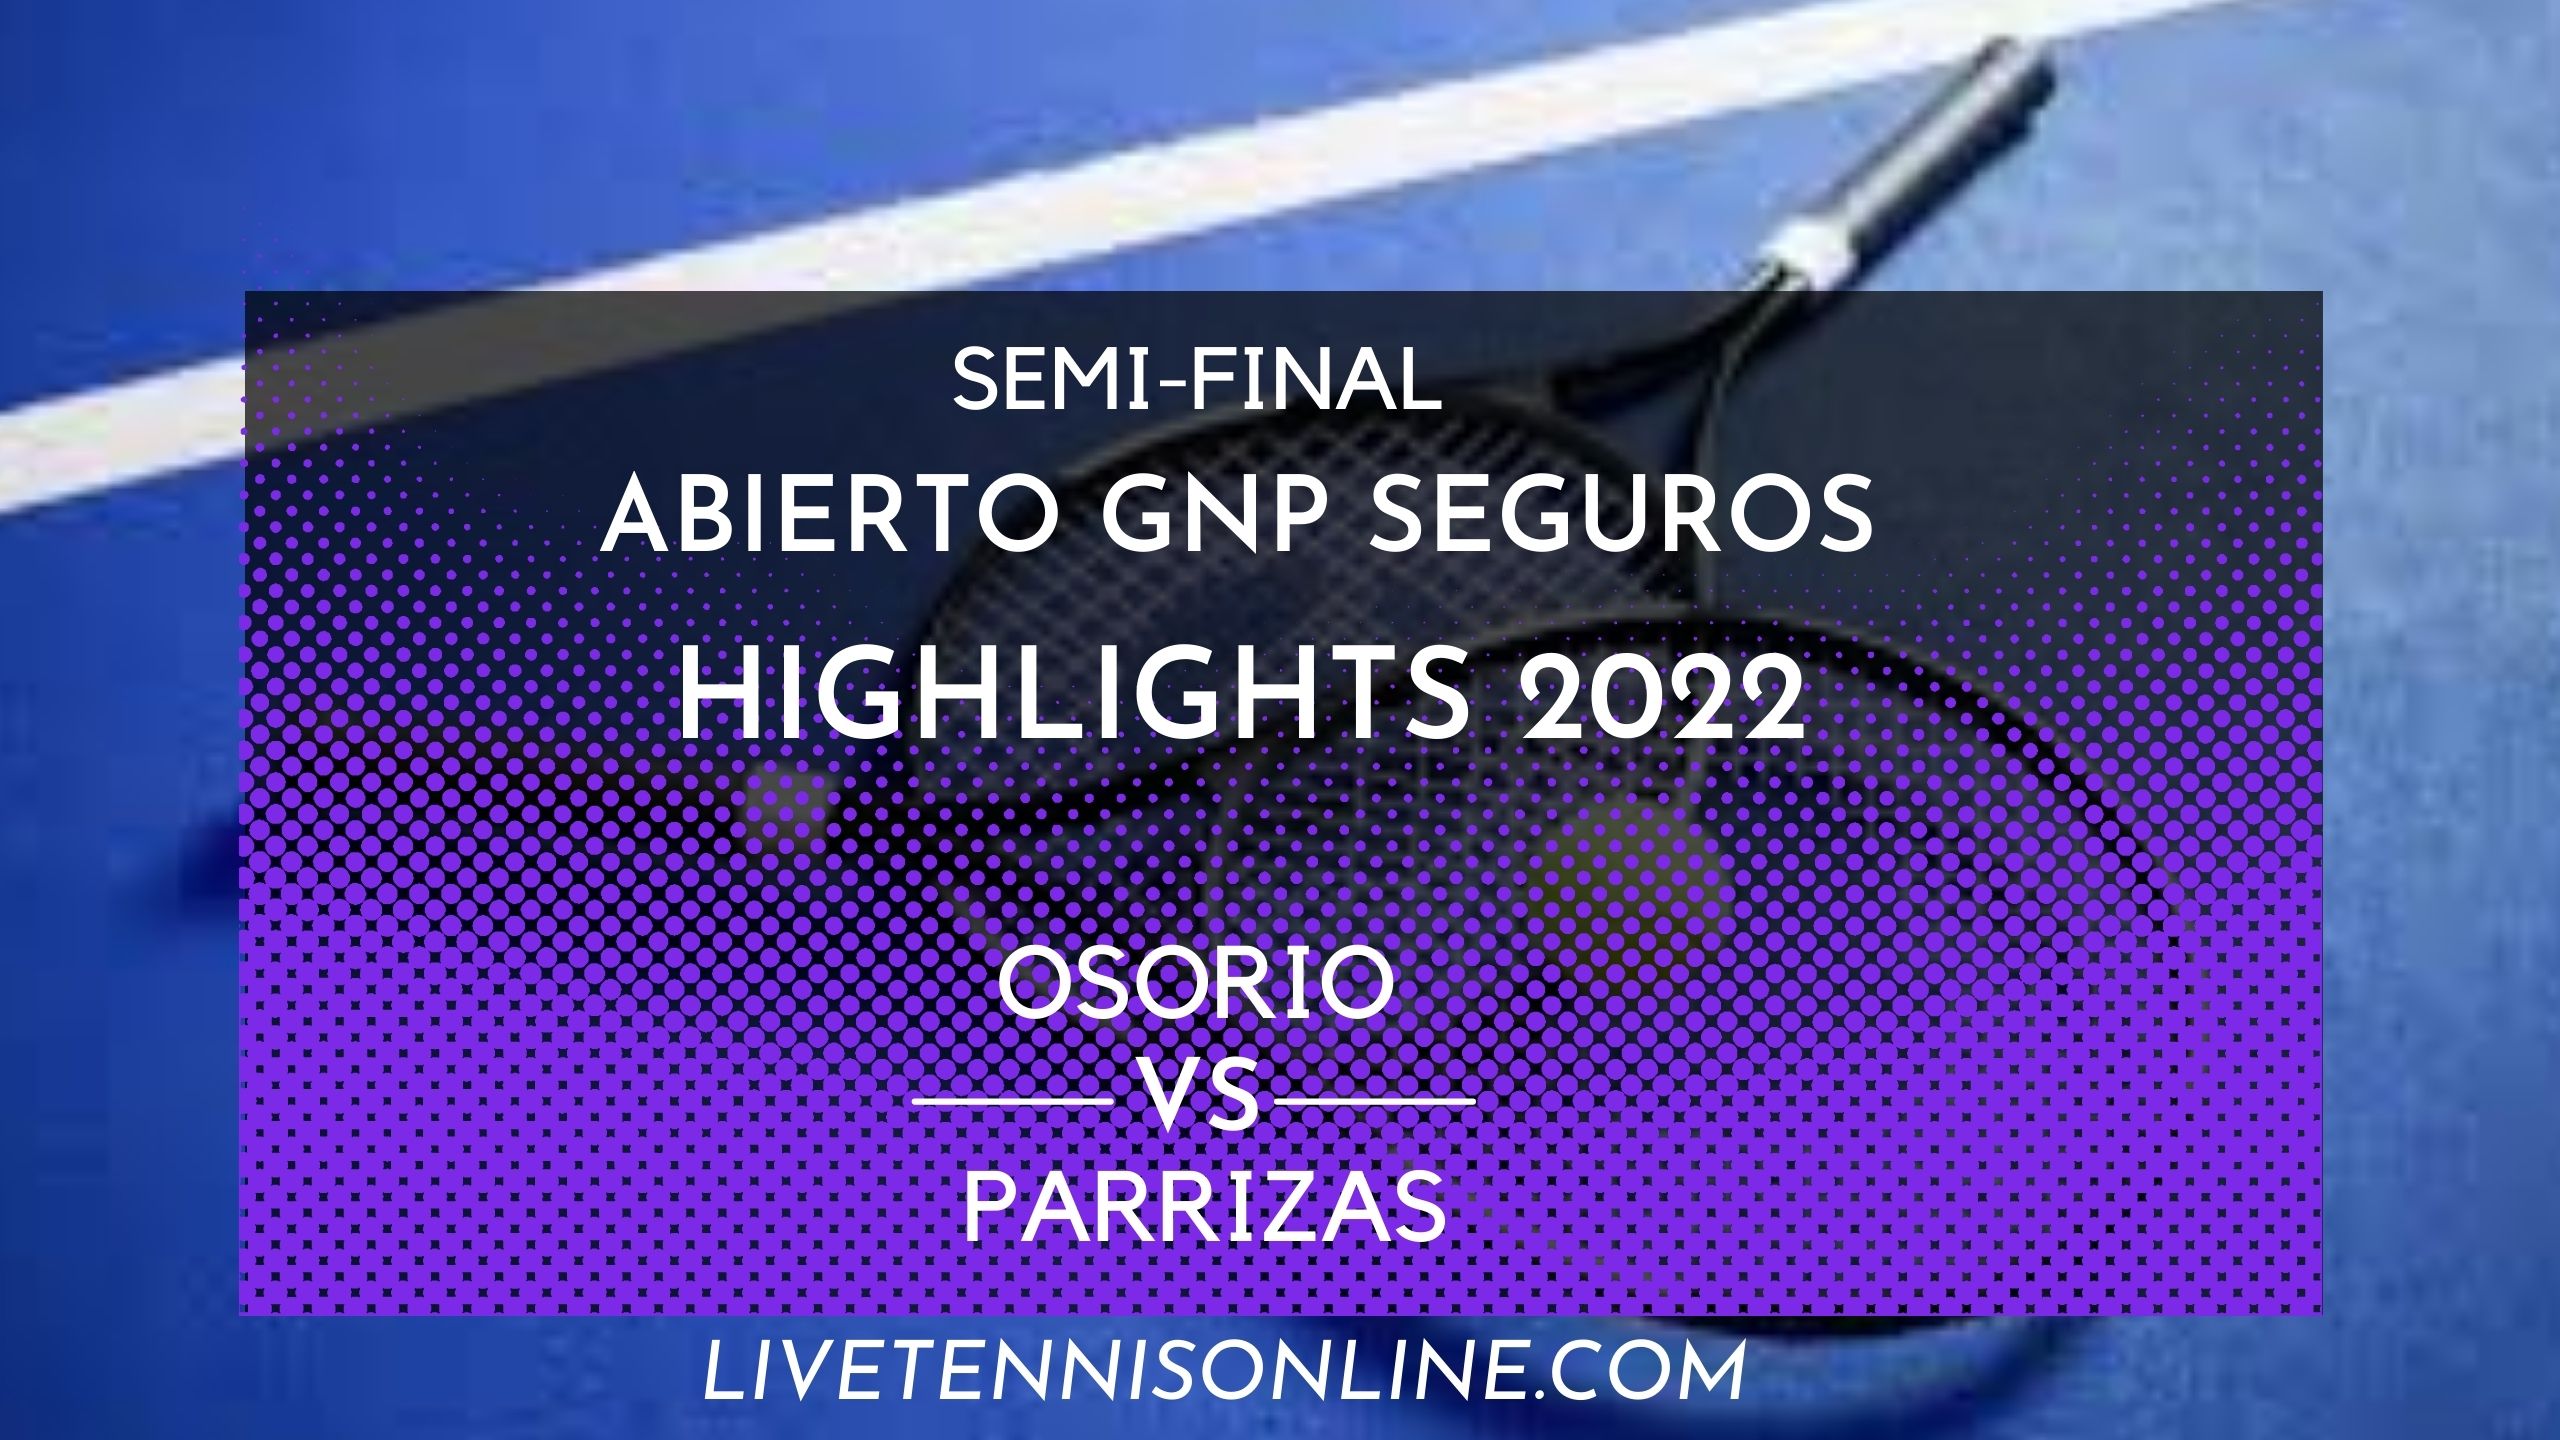 Osorio Vs Parrizas SF Highlights 2022